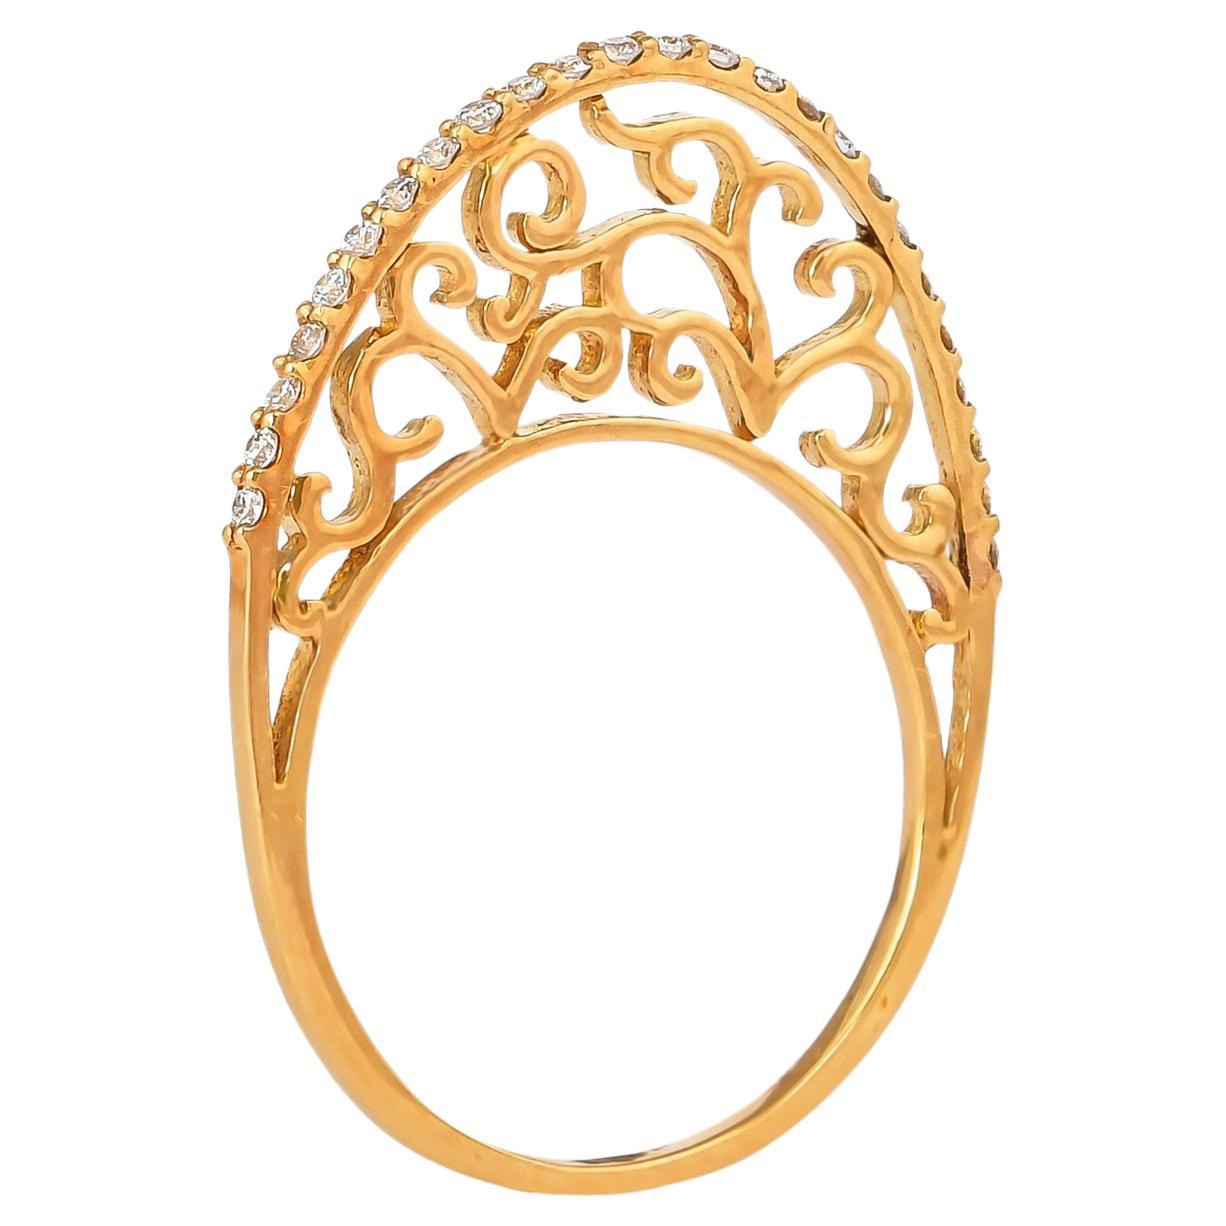 0.171 Carat Diamond Ring in 18 Karat Rose Gold